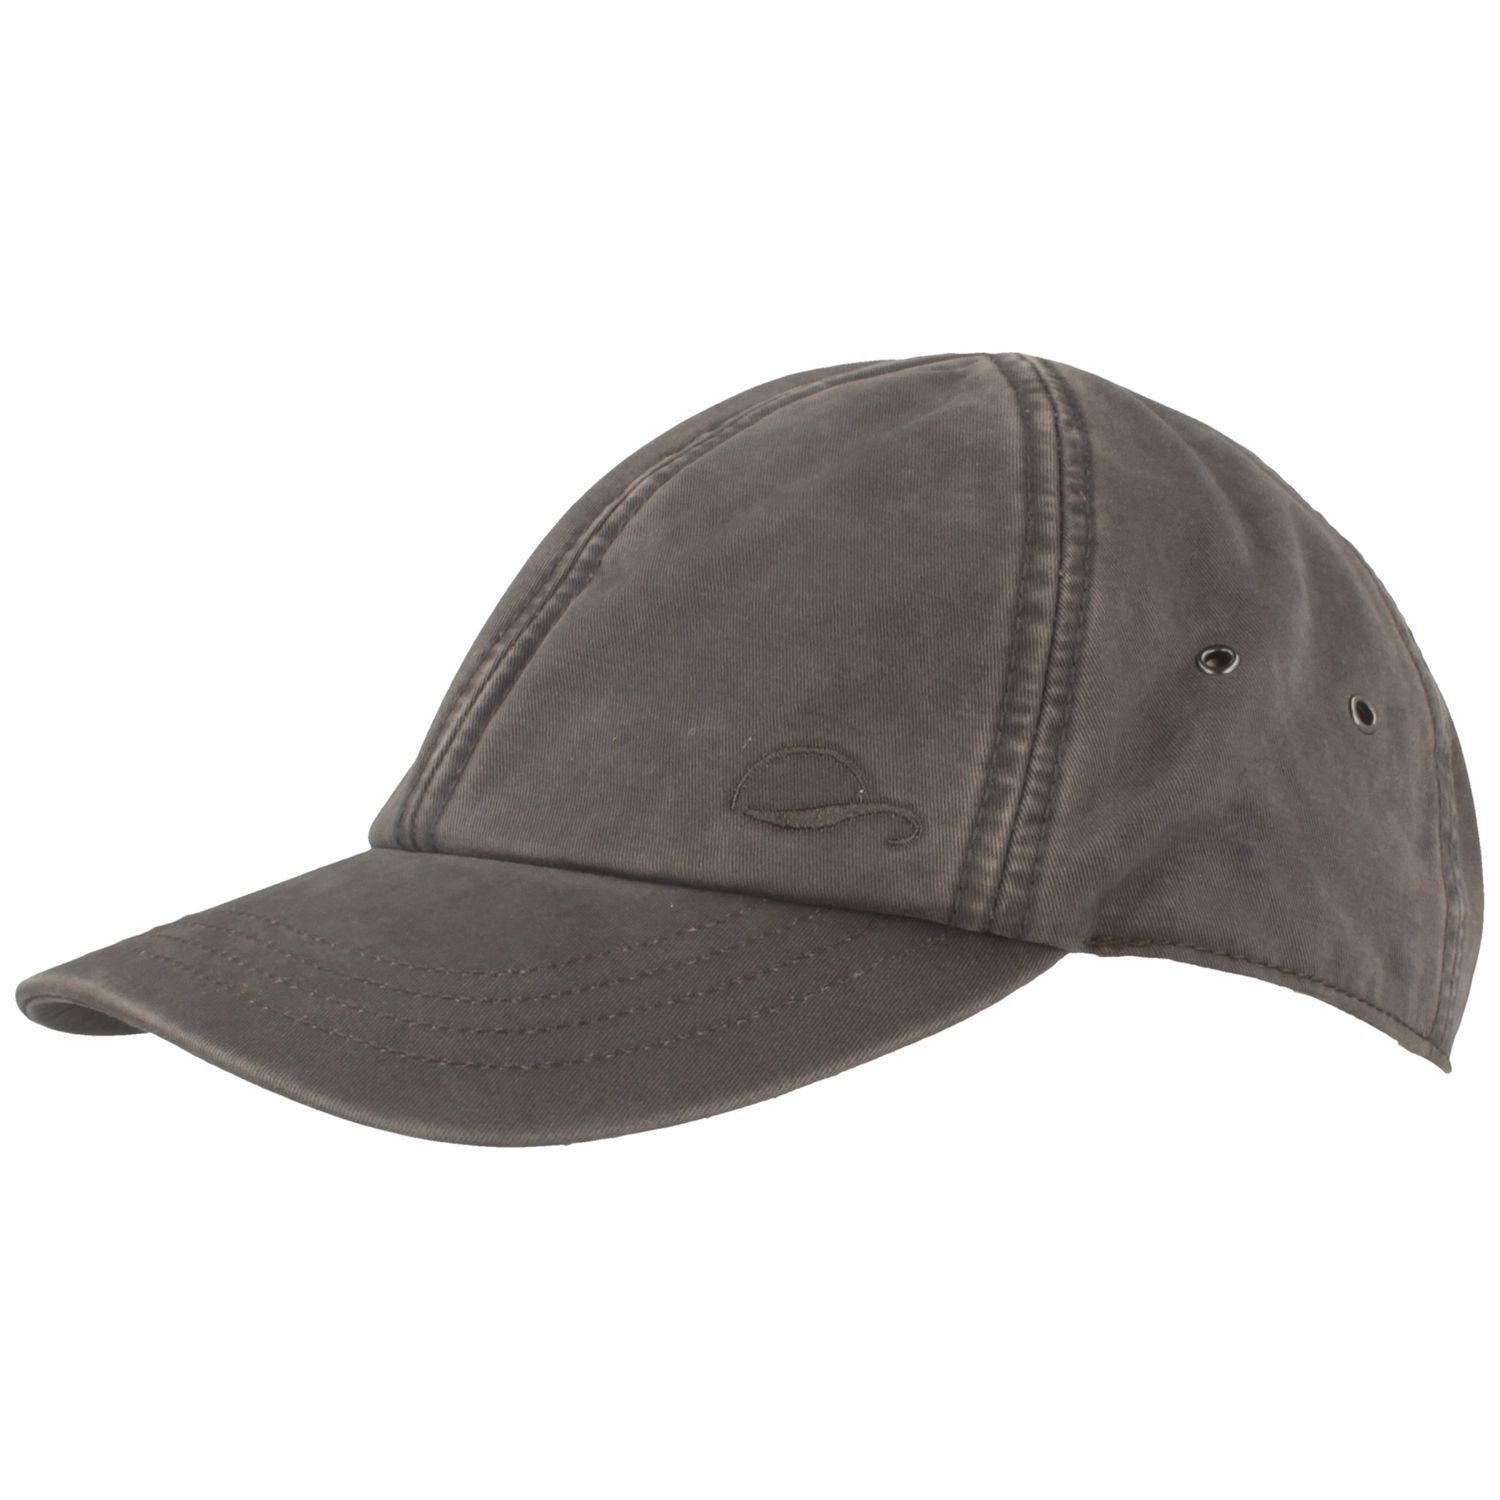 Göttmann Baseball Cap mit UV-Schutz 40+ aus Baumwolle 18 grau